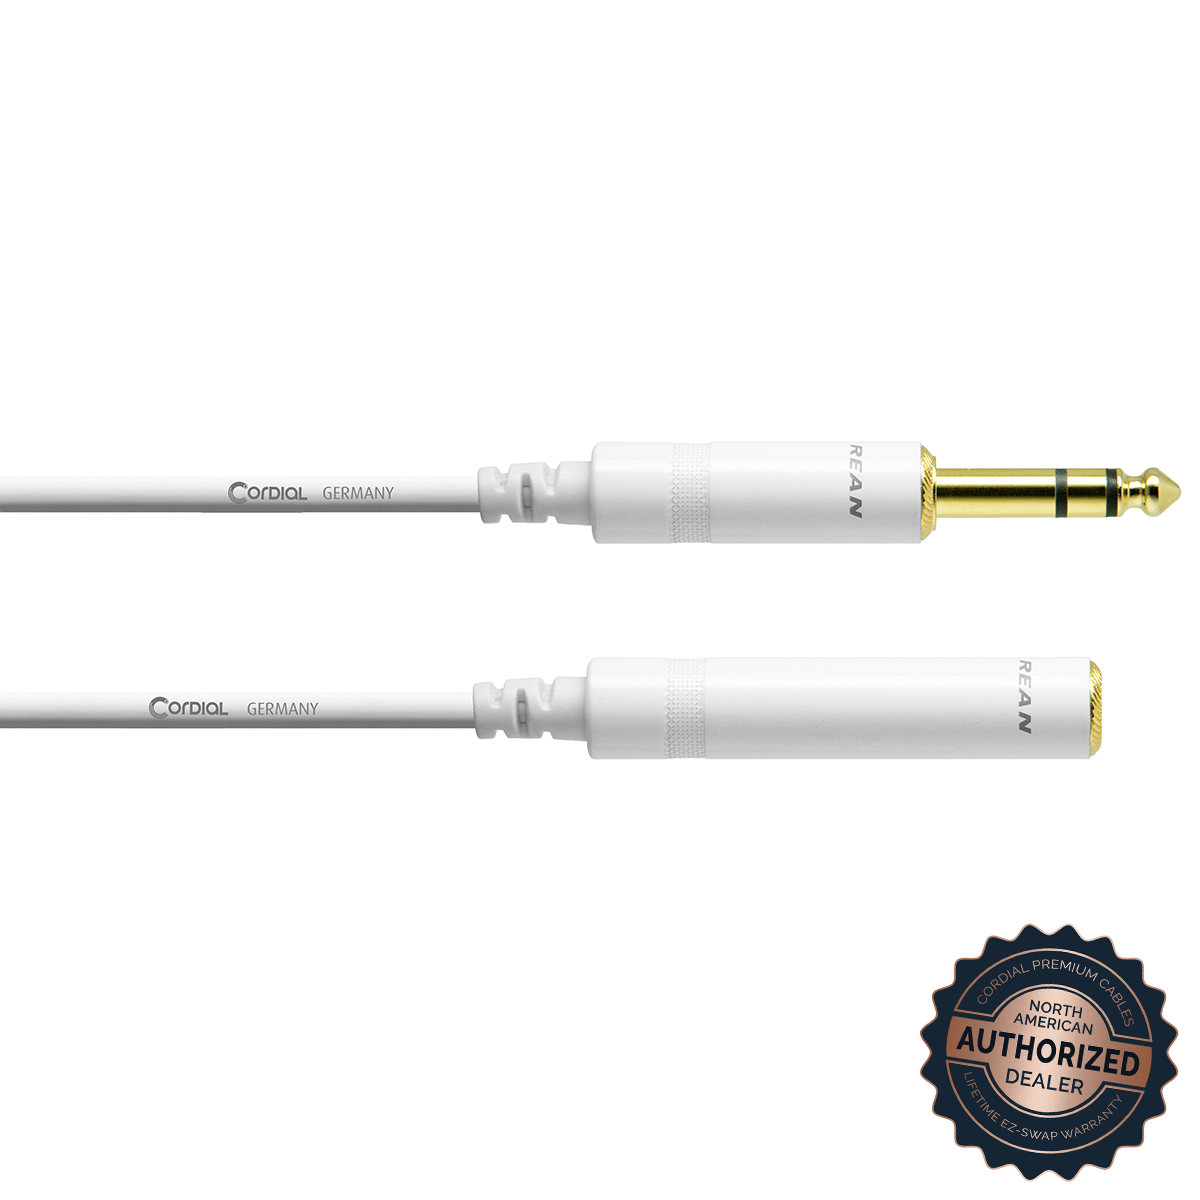 Cordial Stereo Headphone/Line Adapter/Extender; White, 16ft.

SKU: CFM 5 VK - SNOW

1/4" TRS Male to 1/4" TRS Female; White, 16ft. 